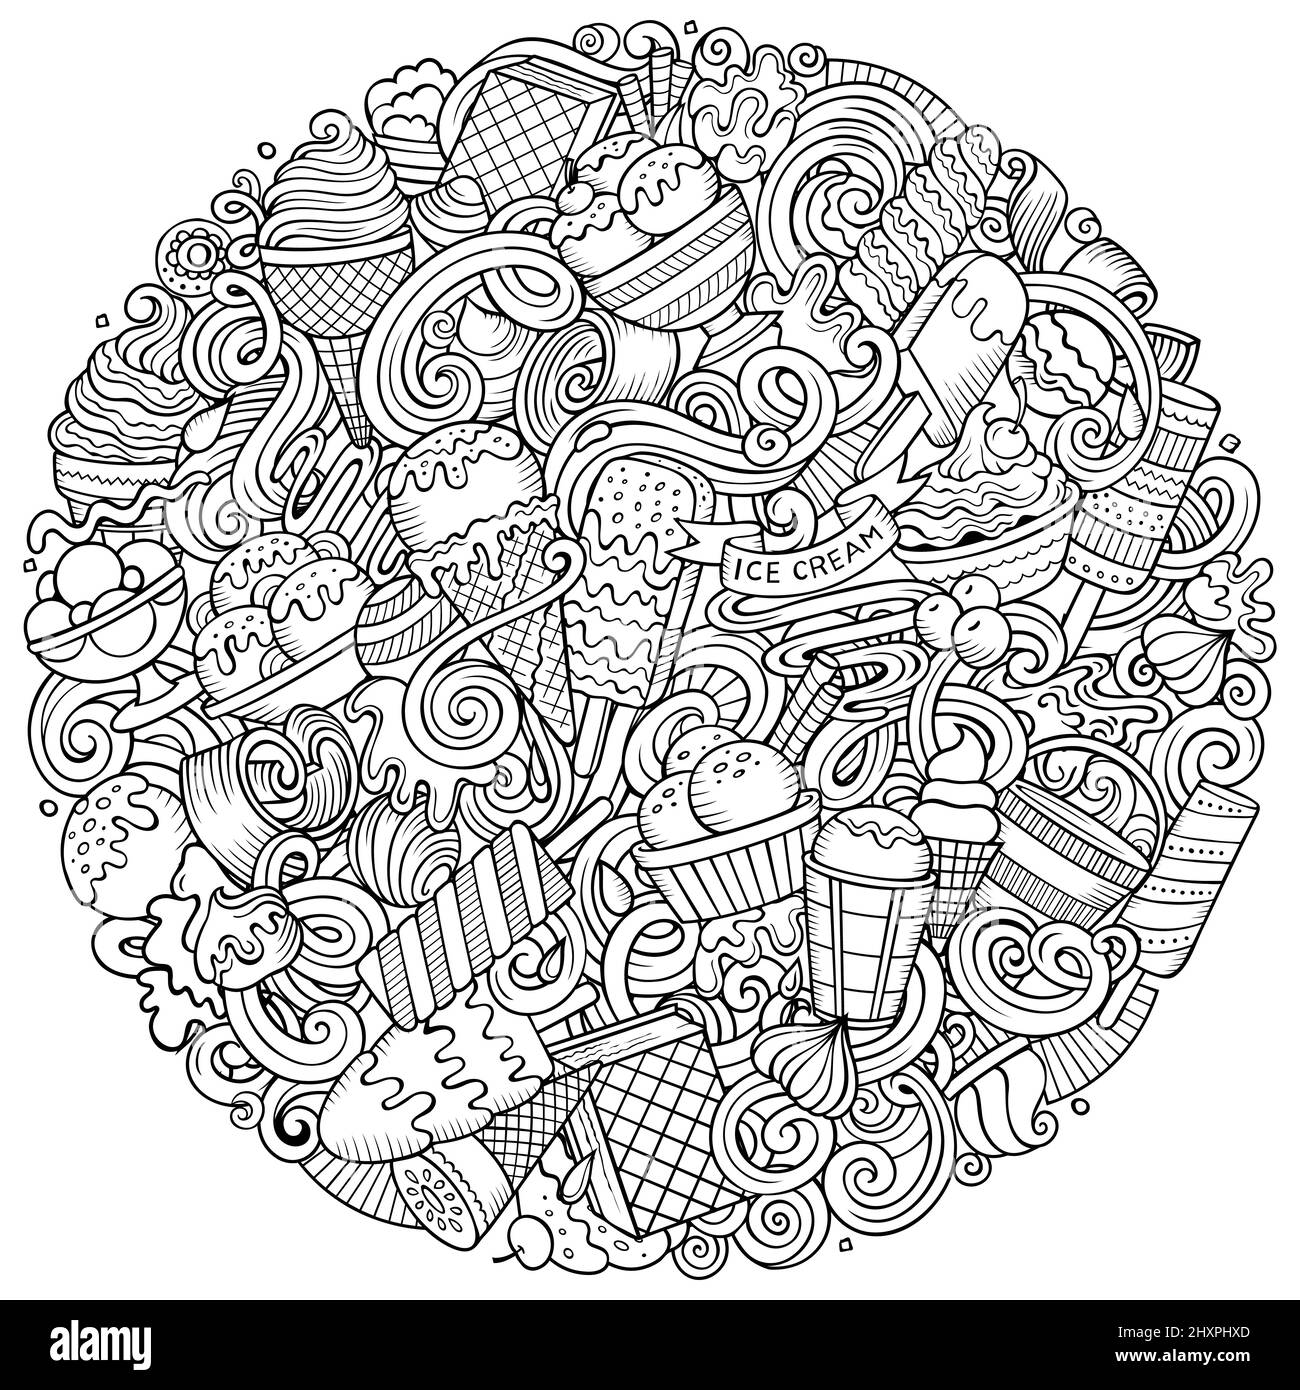 Handgezeichnete Vektorgrafiken für Eiscreme. Posterdesign für Süßigkeiten. Sweet Food Elemente und Objekte Cartoon Hintergrund. Stock Vektor